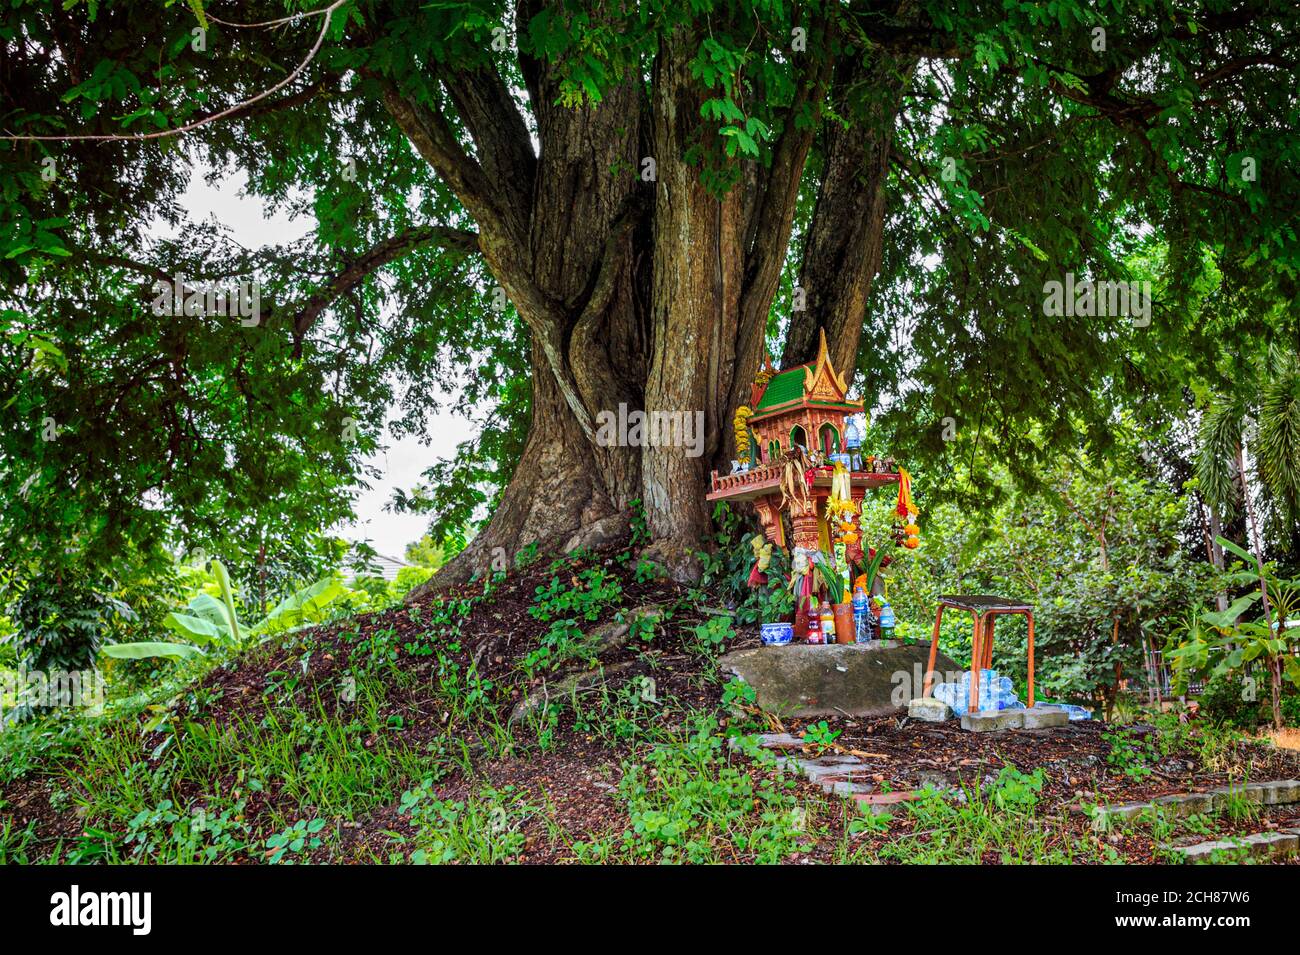 Una casa de espíritu en la tierra montículo con un árbol enorme se encuentra detrás. Casa tradicional tailandesa en miniatura construida para el espíritu guardián para residir. Foto de stock